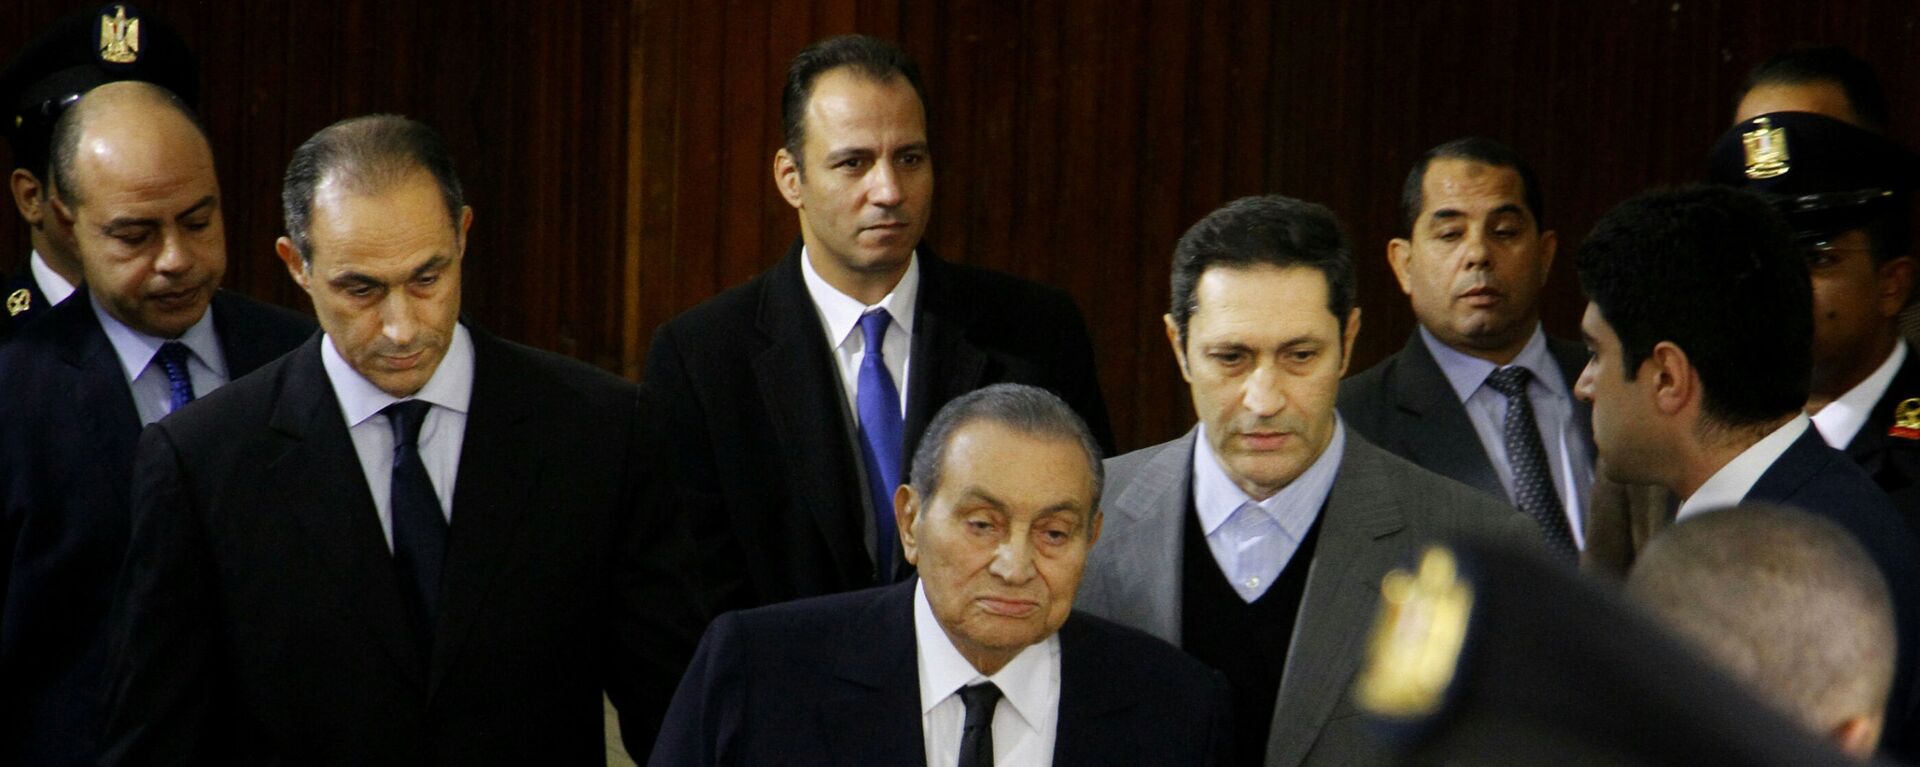 الرئيس المصري السابق حسني مبارك في الوسط مع ولديه علاء (اليسار) وجمال (اليمين) في قاعة المحكمة في أكاديمية الشرطة - سبوتنيك عربي, 1920, 11.07.2021